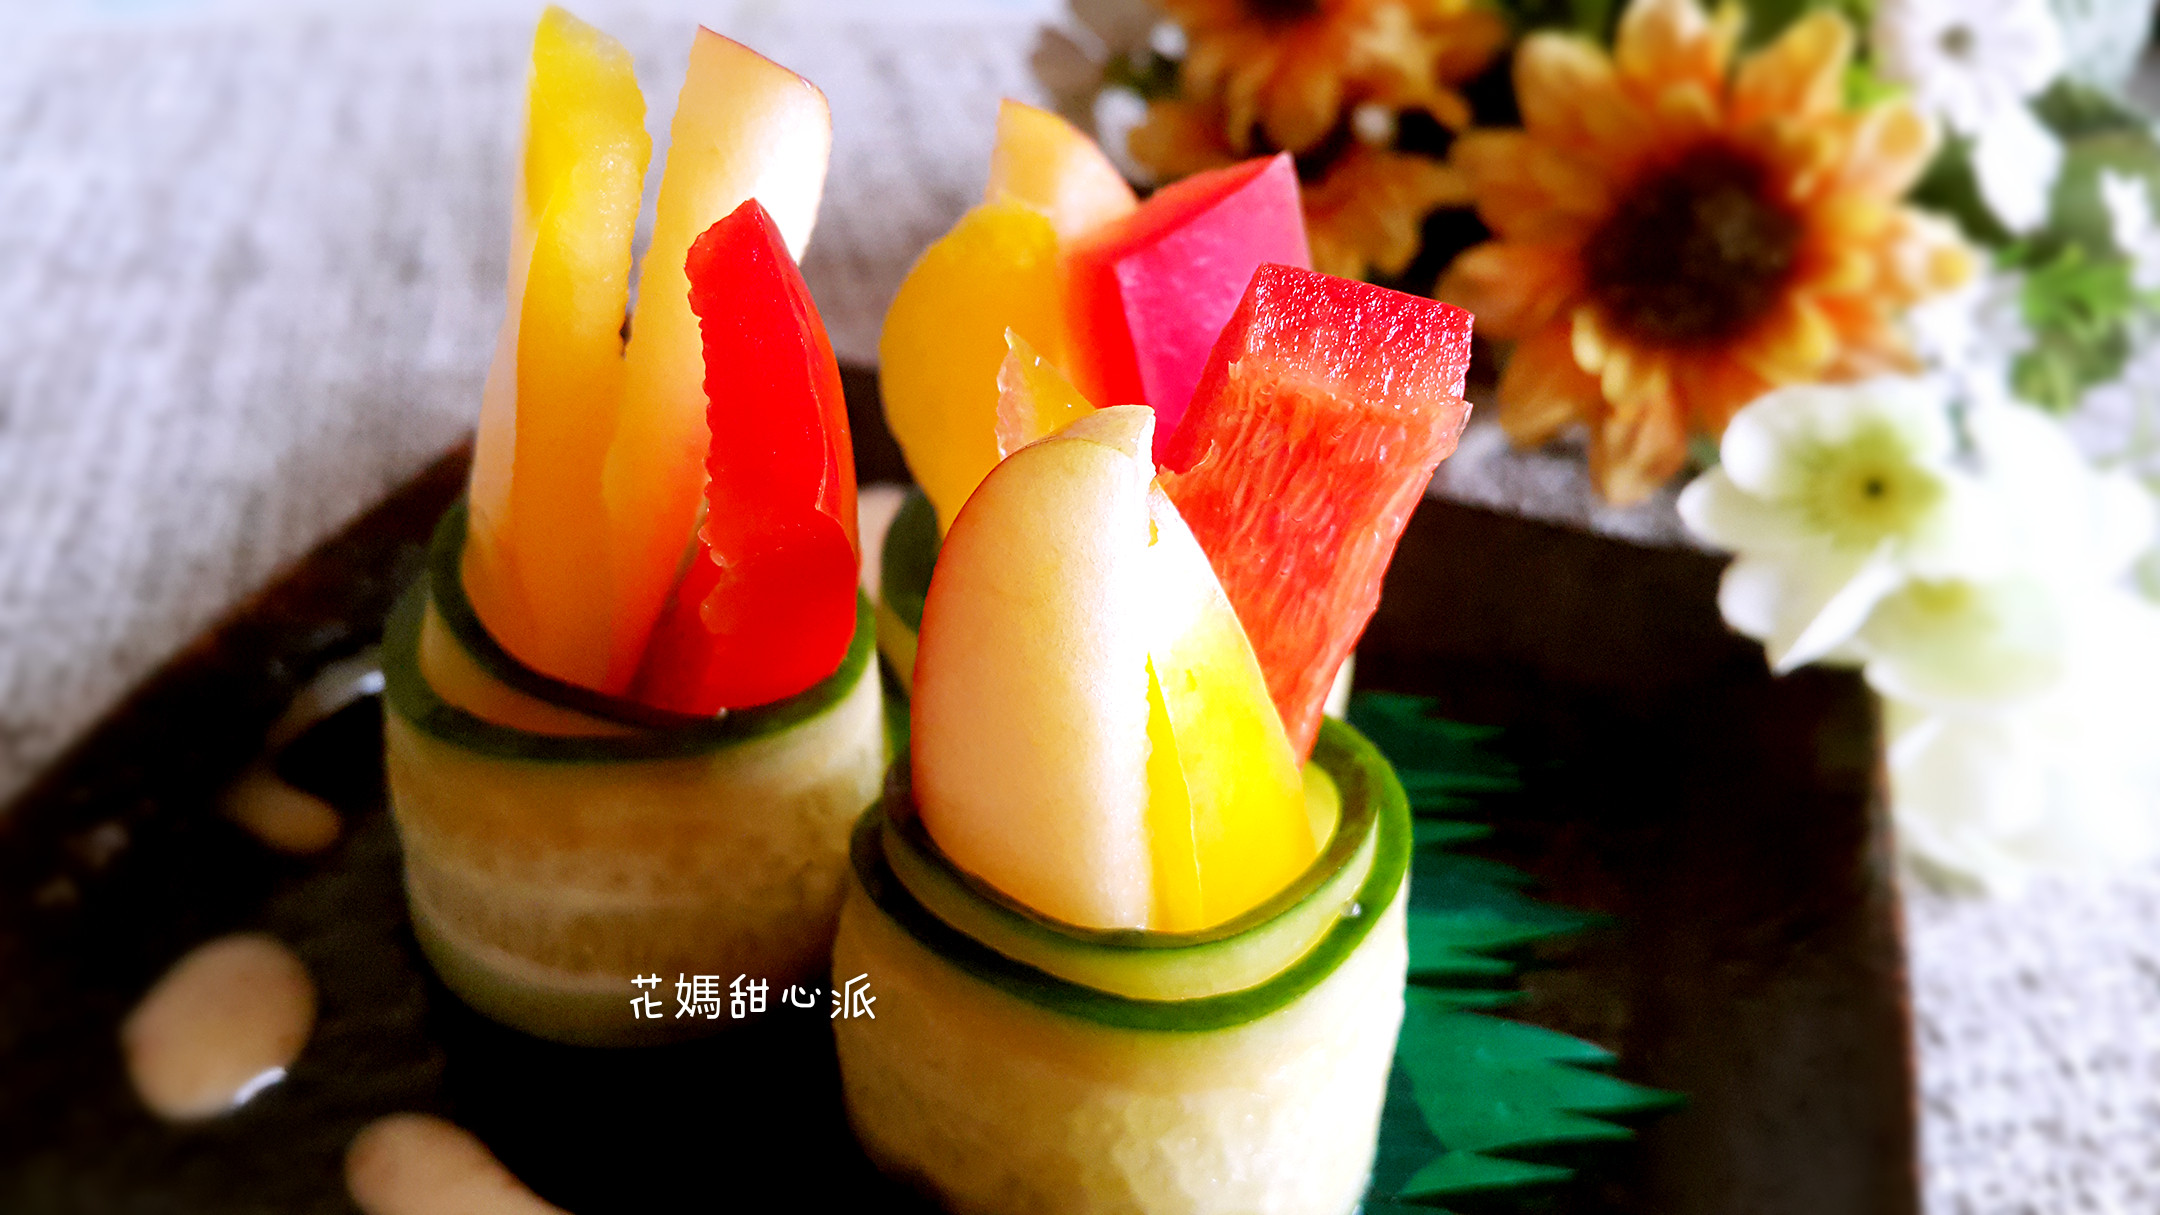 輕食黃瓜蔬果捲家樂福廚神大賽2015